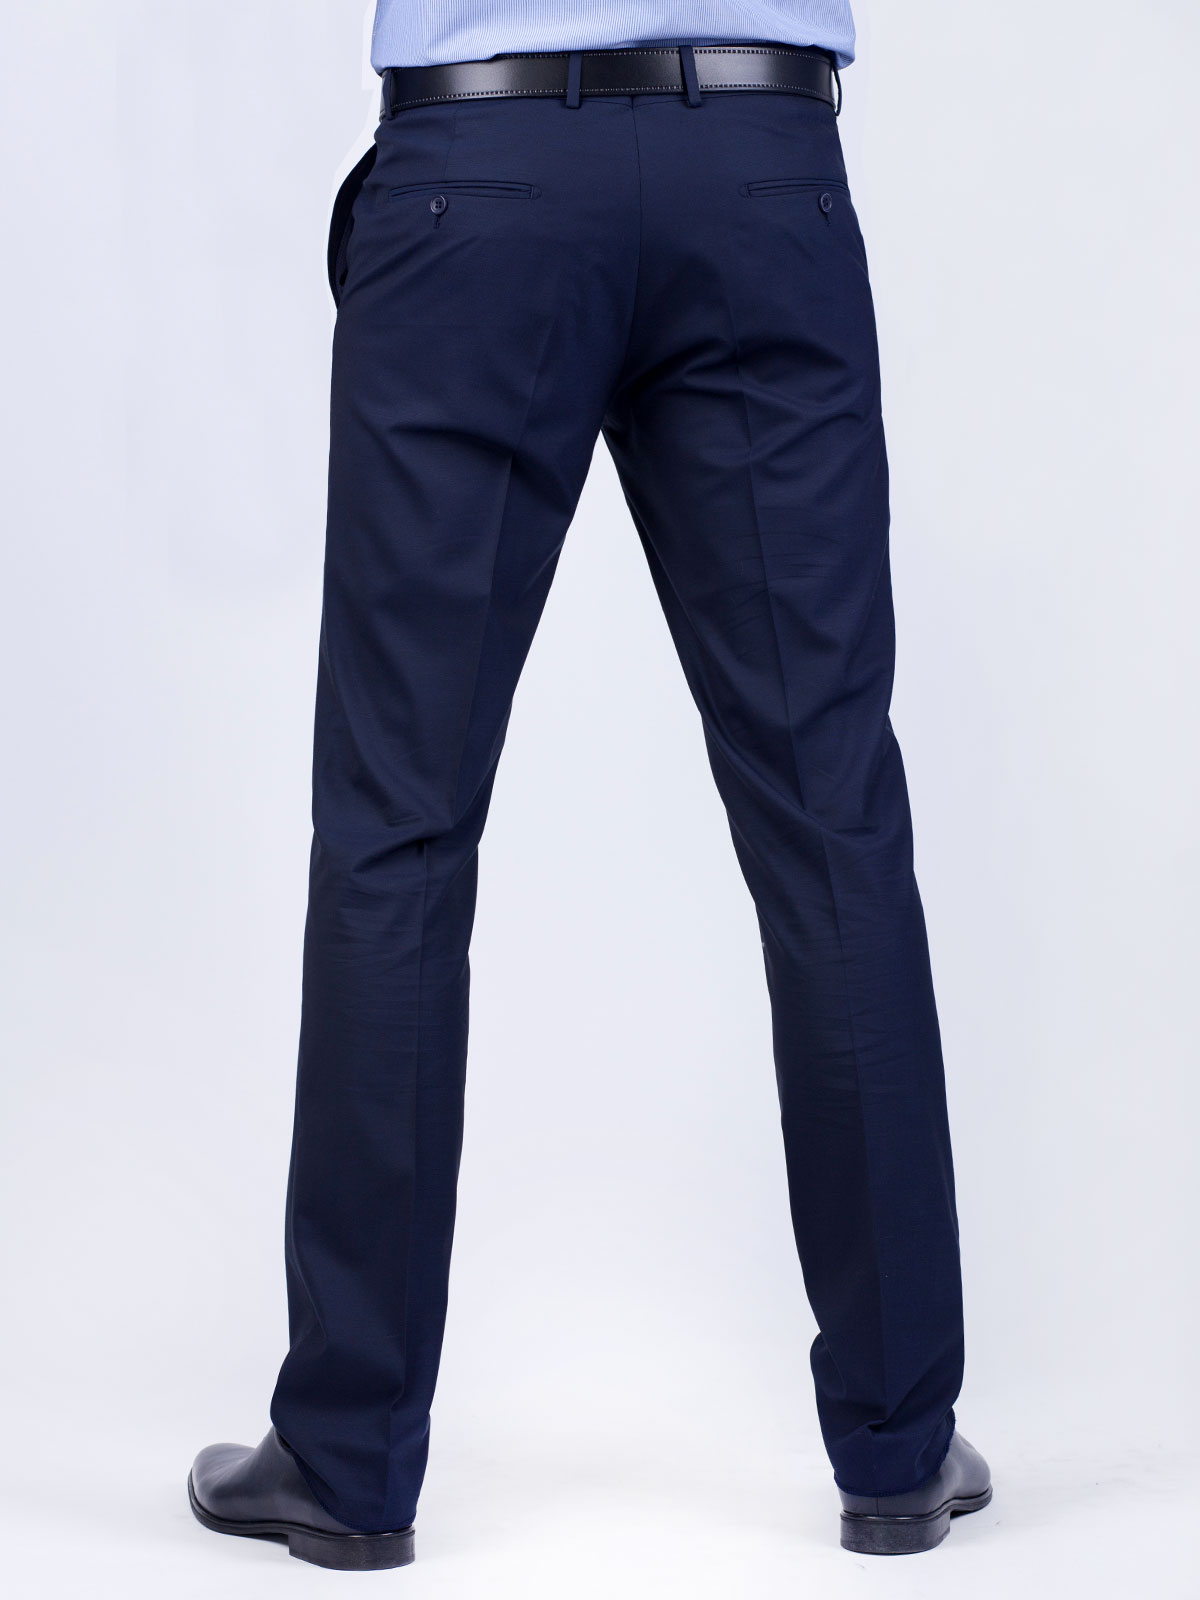 Κομψό παντελόνι βισκόζης σε σκούρο μπλε - 63159 € 24.75 img2